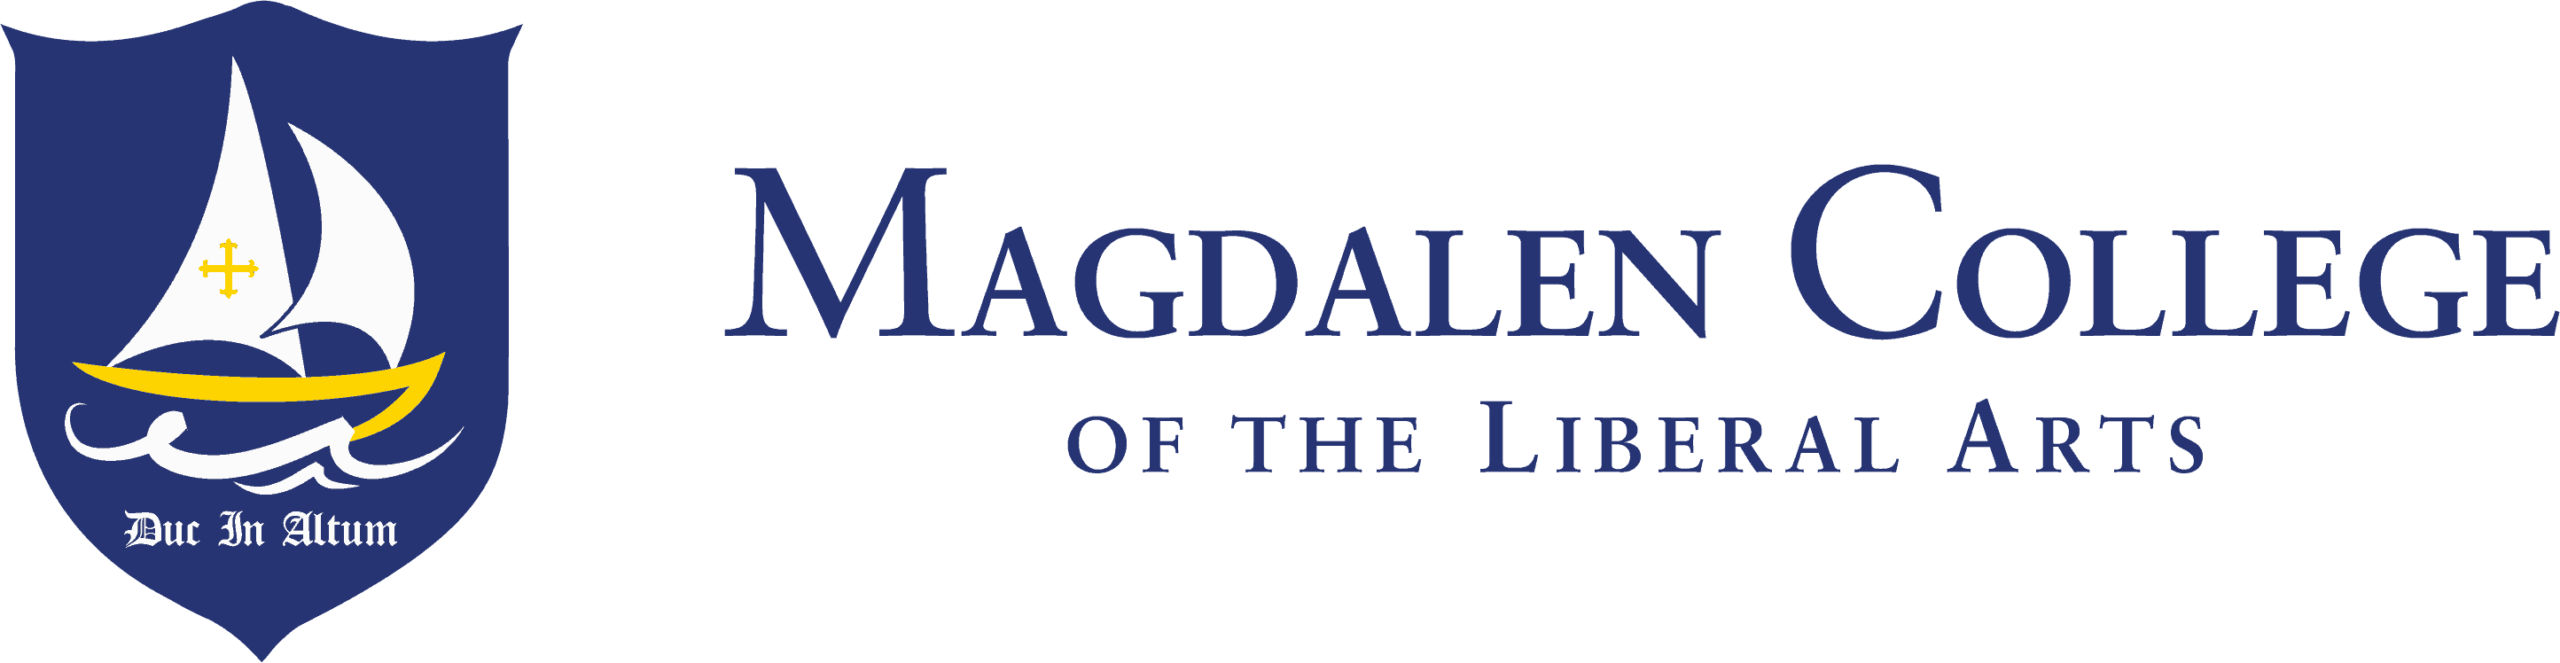 Magdalen College logo